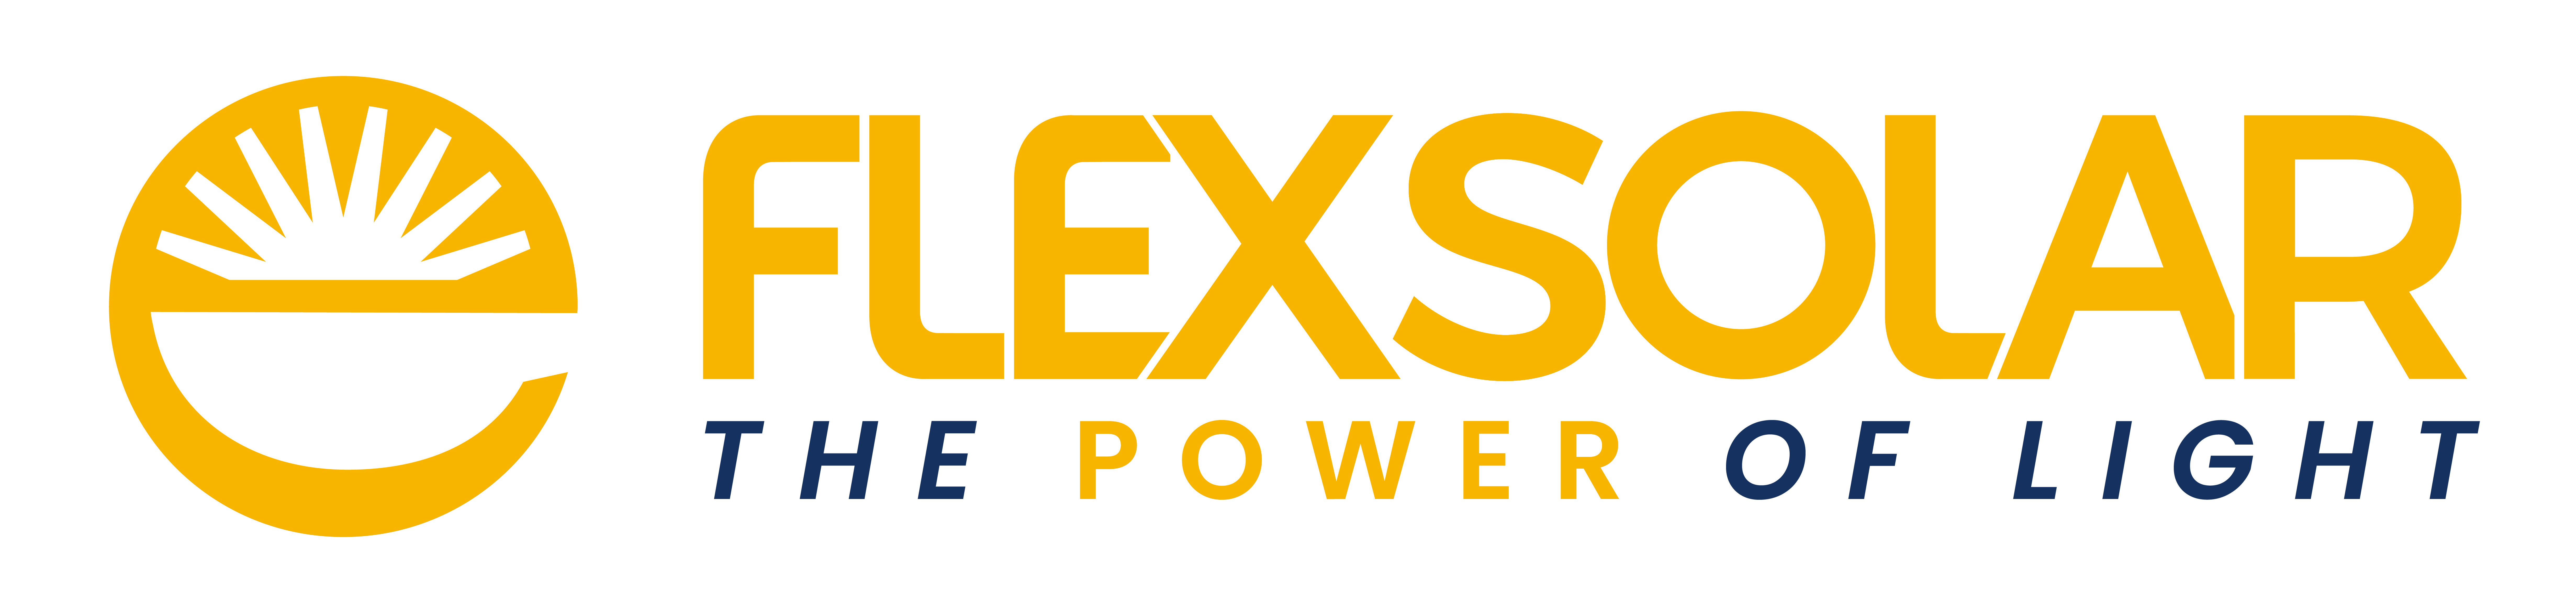 FlexSolar logo